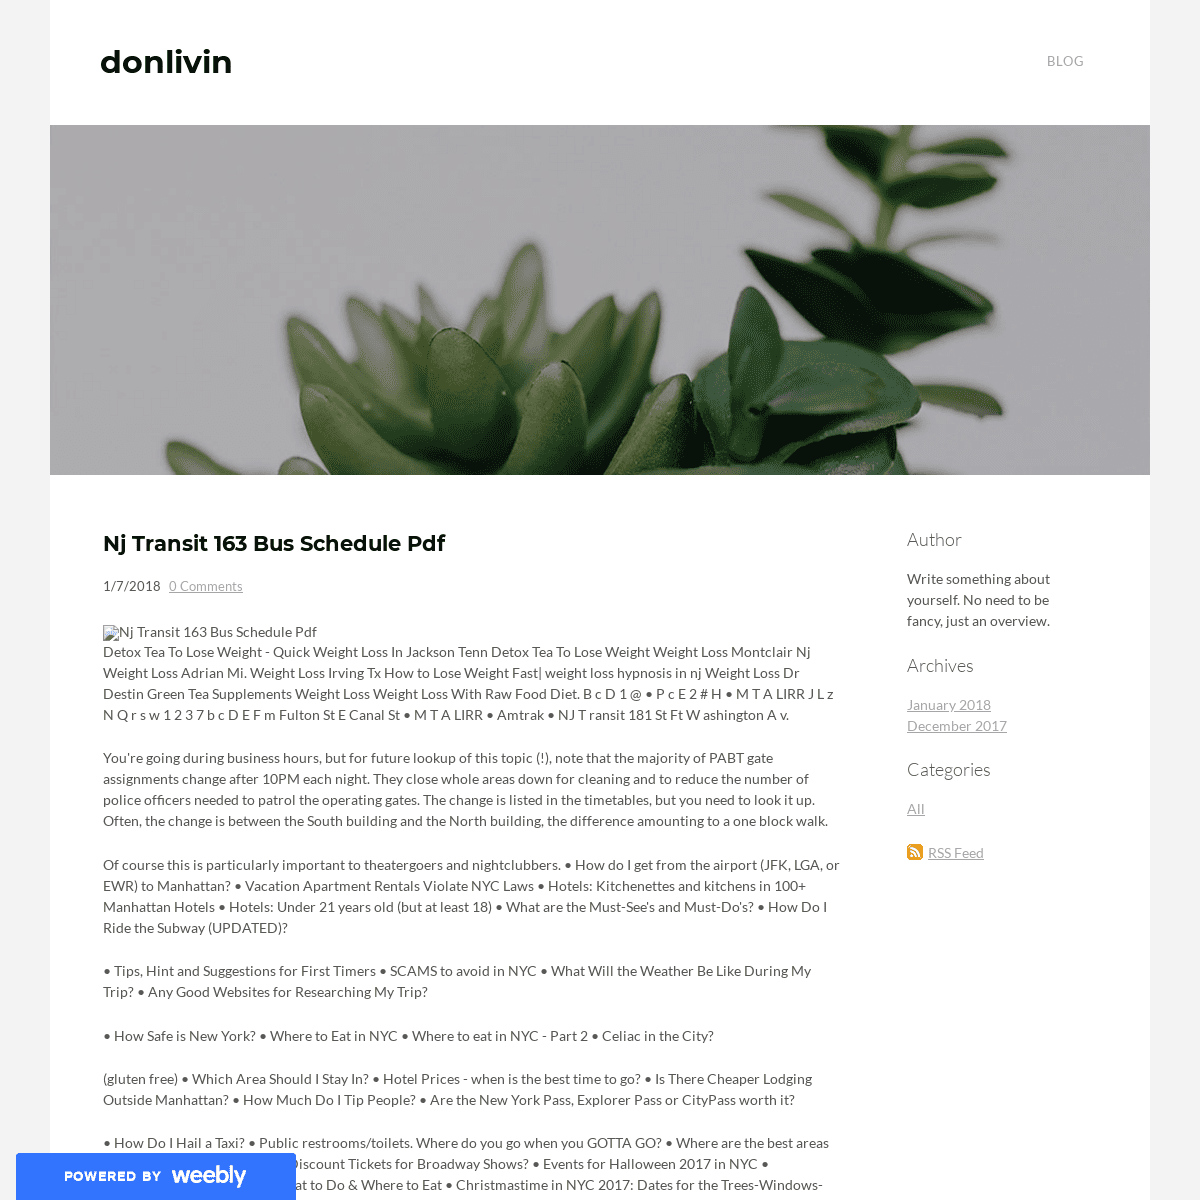 donlivin - Blog